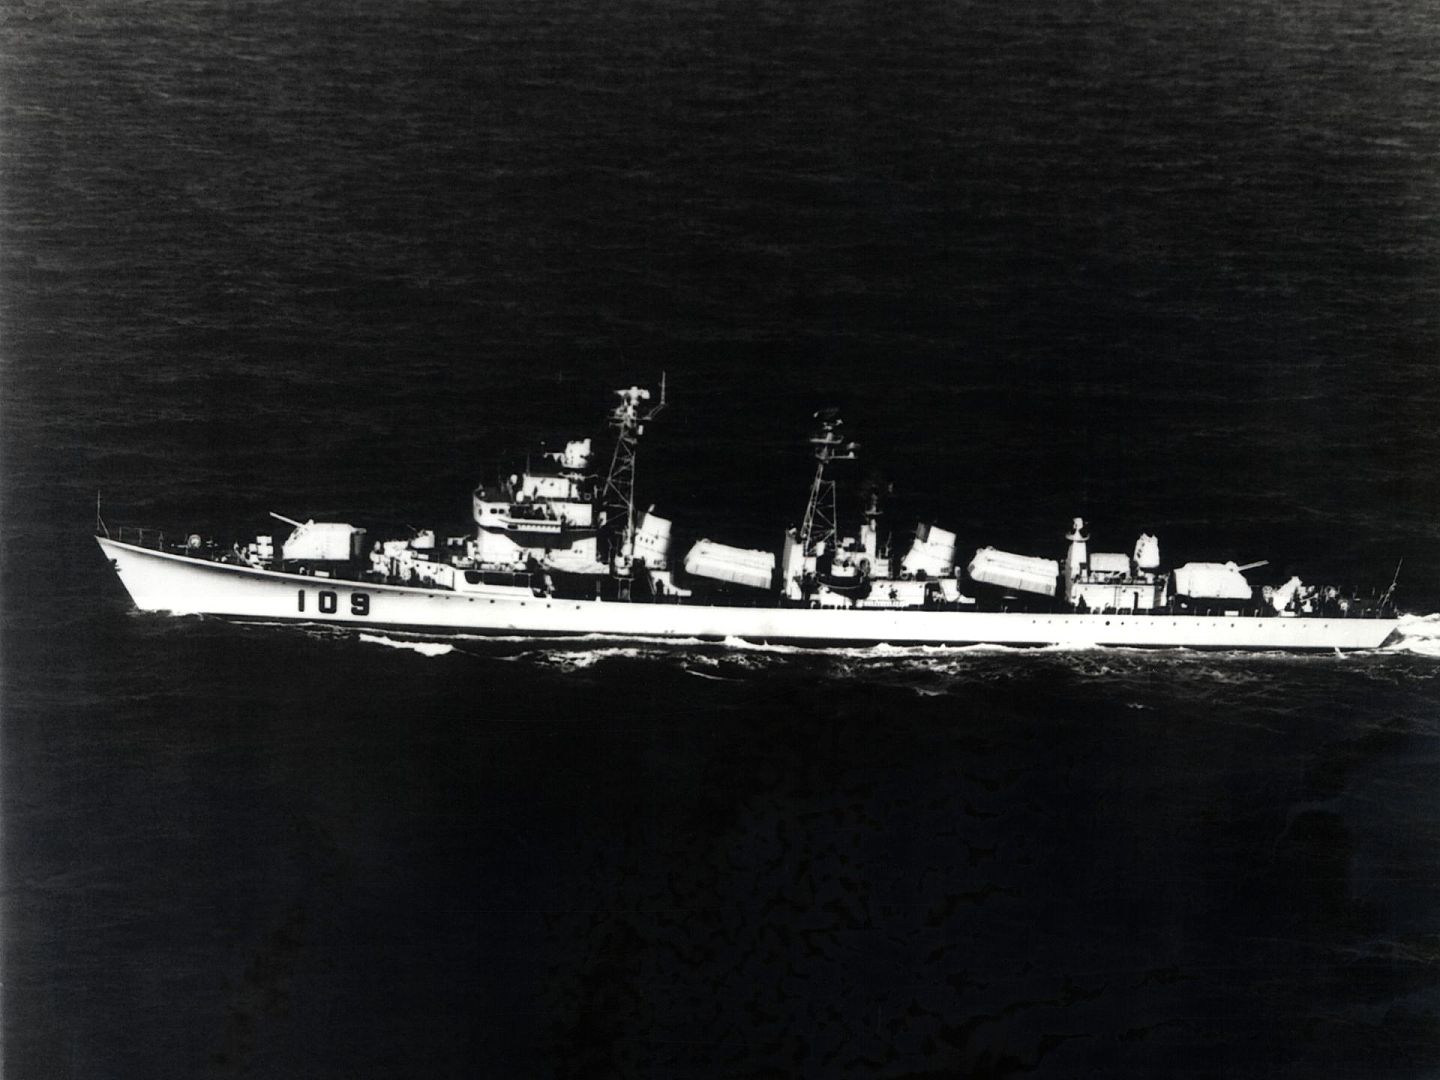 051型驱逐舰是中国第一款装备反舰导弹的驱逐舰，军舰中部两个桅杆后即是各一座三联装海鹰-1反舰导弹，而前后各一座130毫米舰炮又暴露出主战兵器由火炮向导弹过渡时期的特征。图为051型驱逐舰109开封舰。（维基百科公有领域）